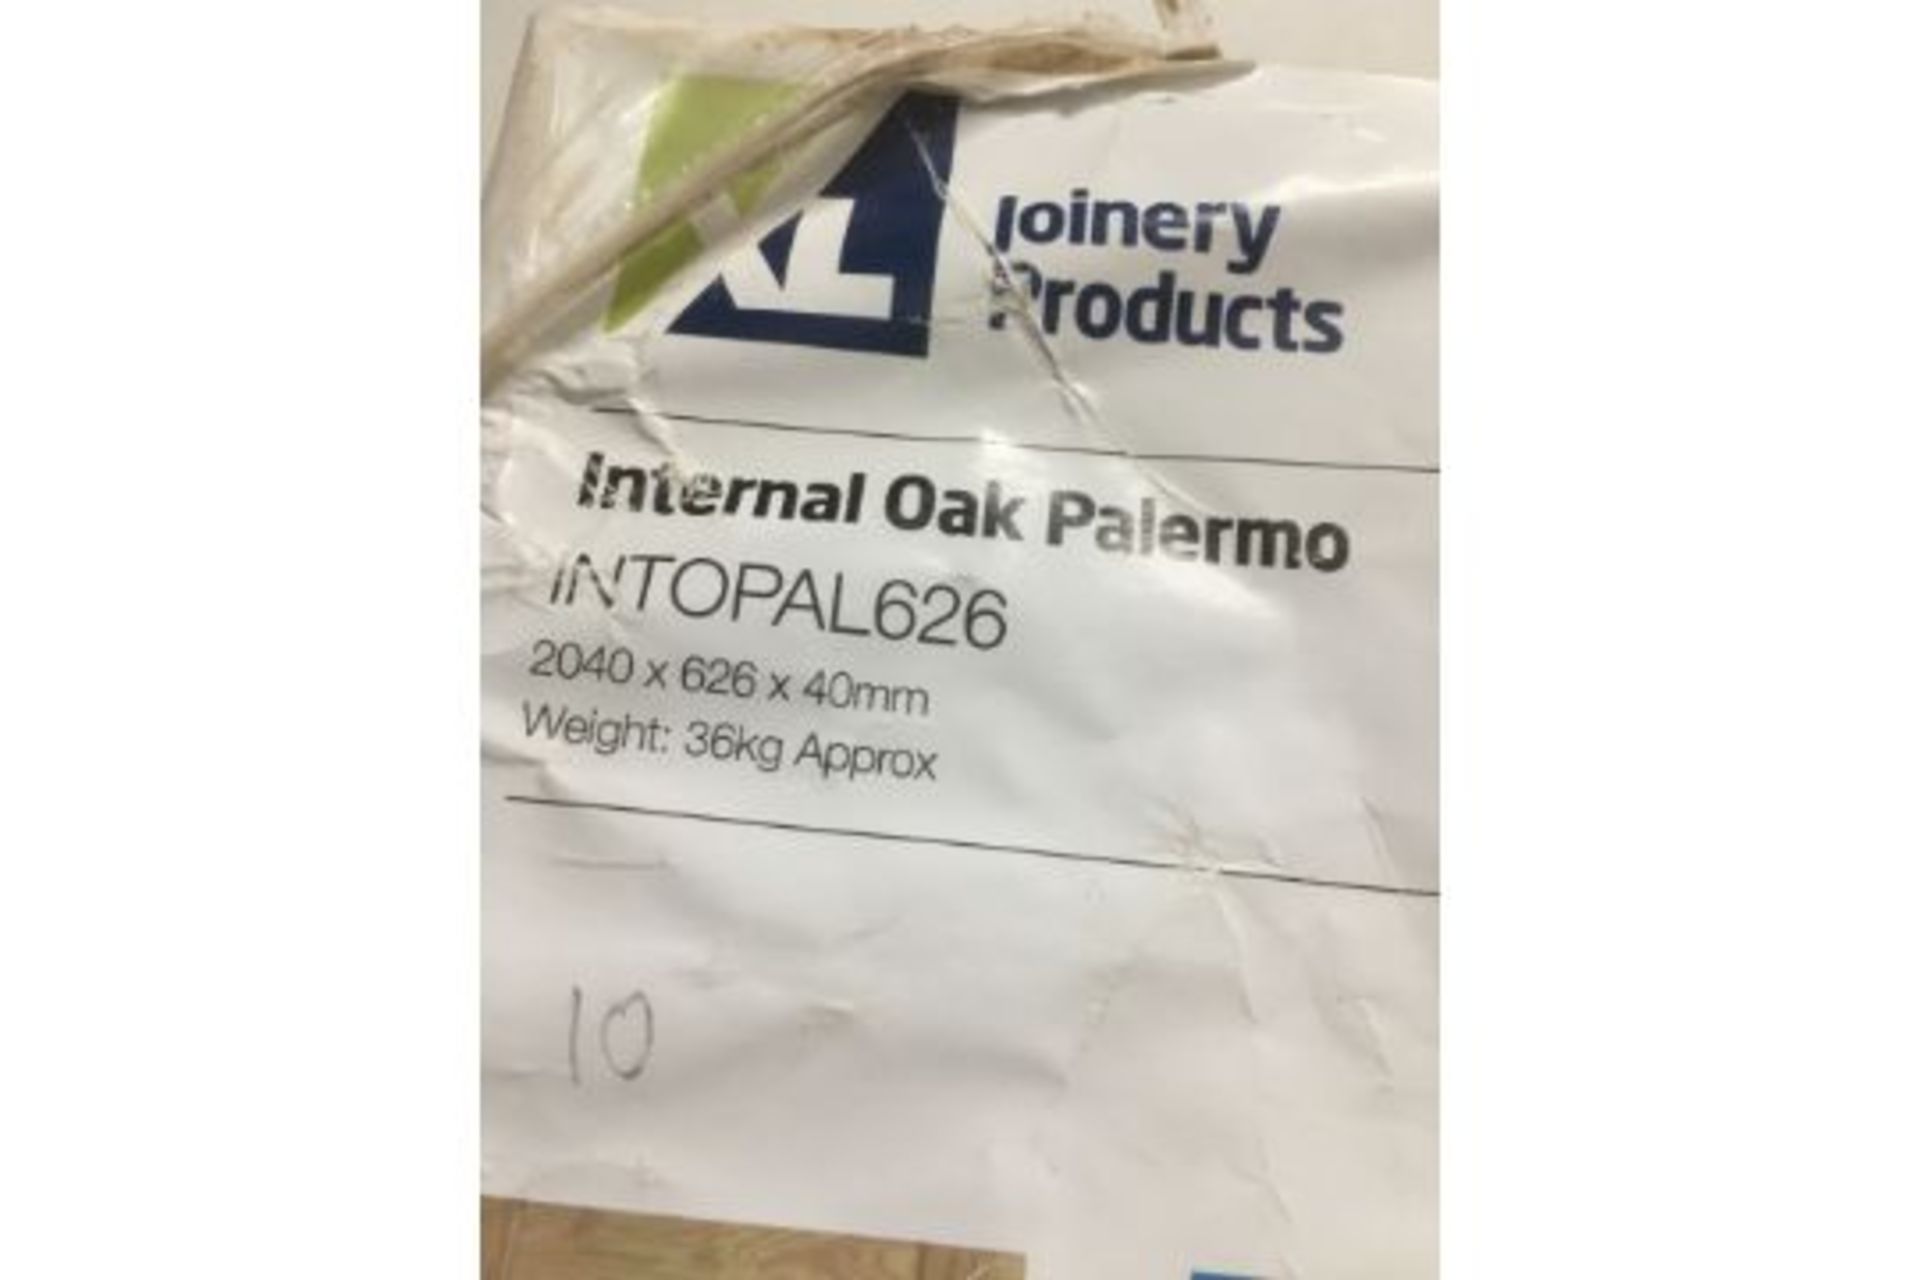 XLJoinery Palermo Internal Oak Door | INTOPAL626 | 2040mm x 626mm x 40mm - Image 3 of 3